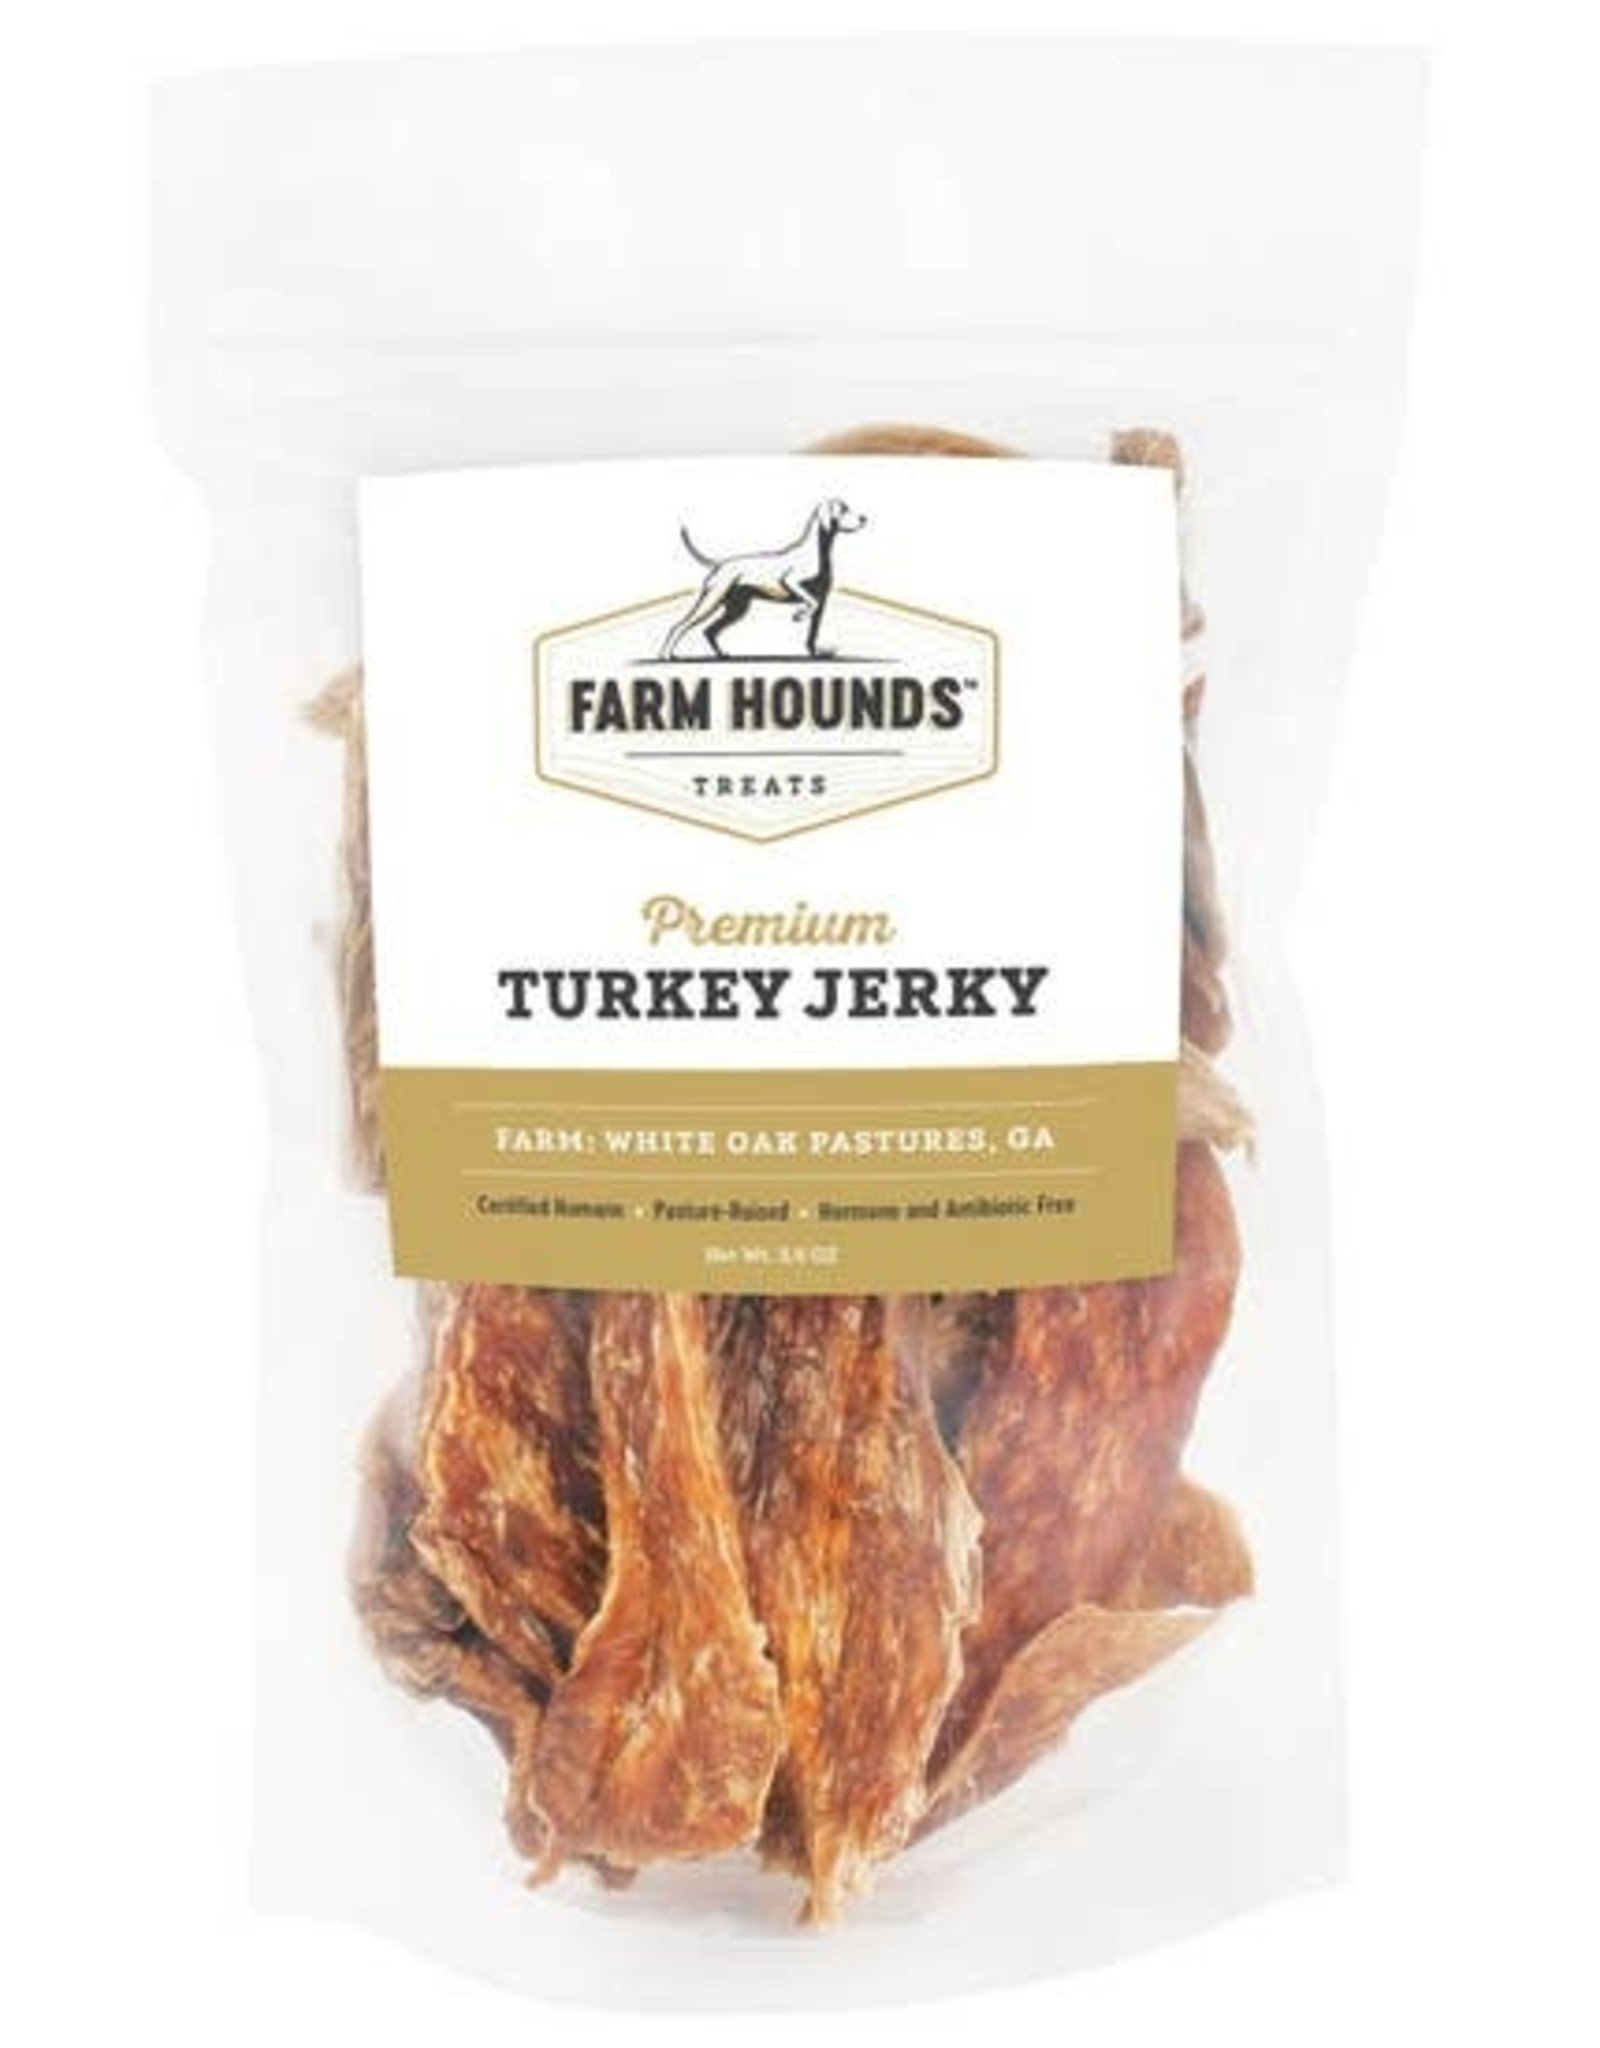 Farm Hounds Farm Hounds Turkey Jerky - 3.5 oz